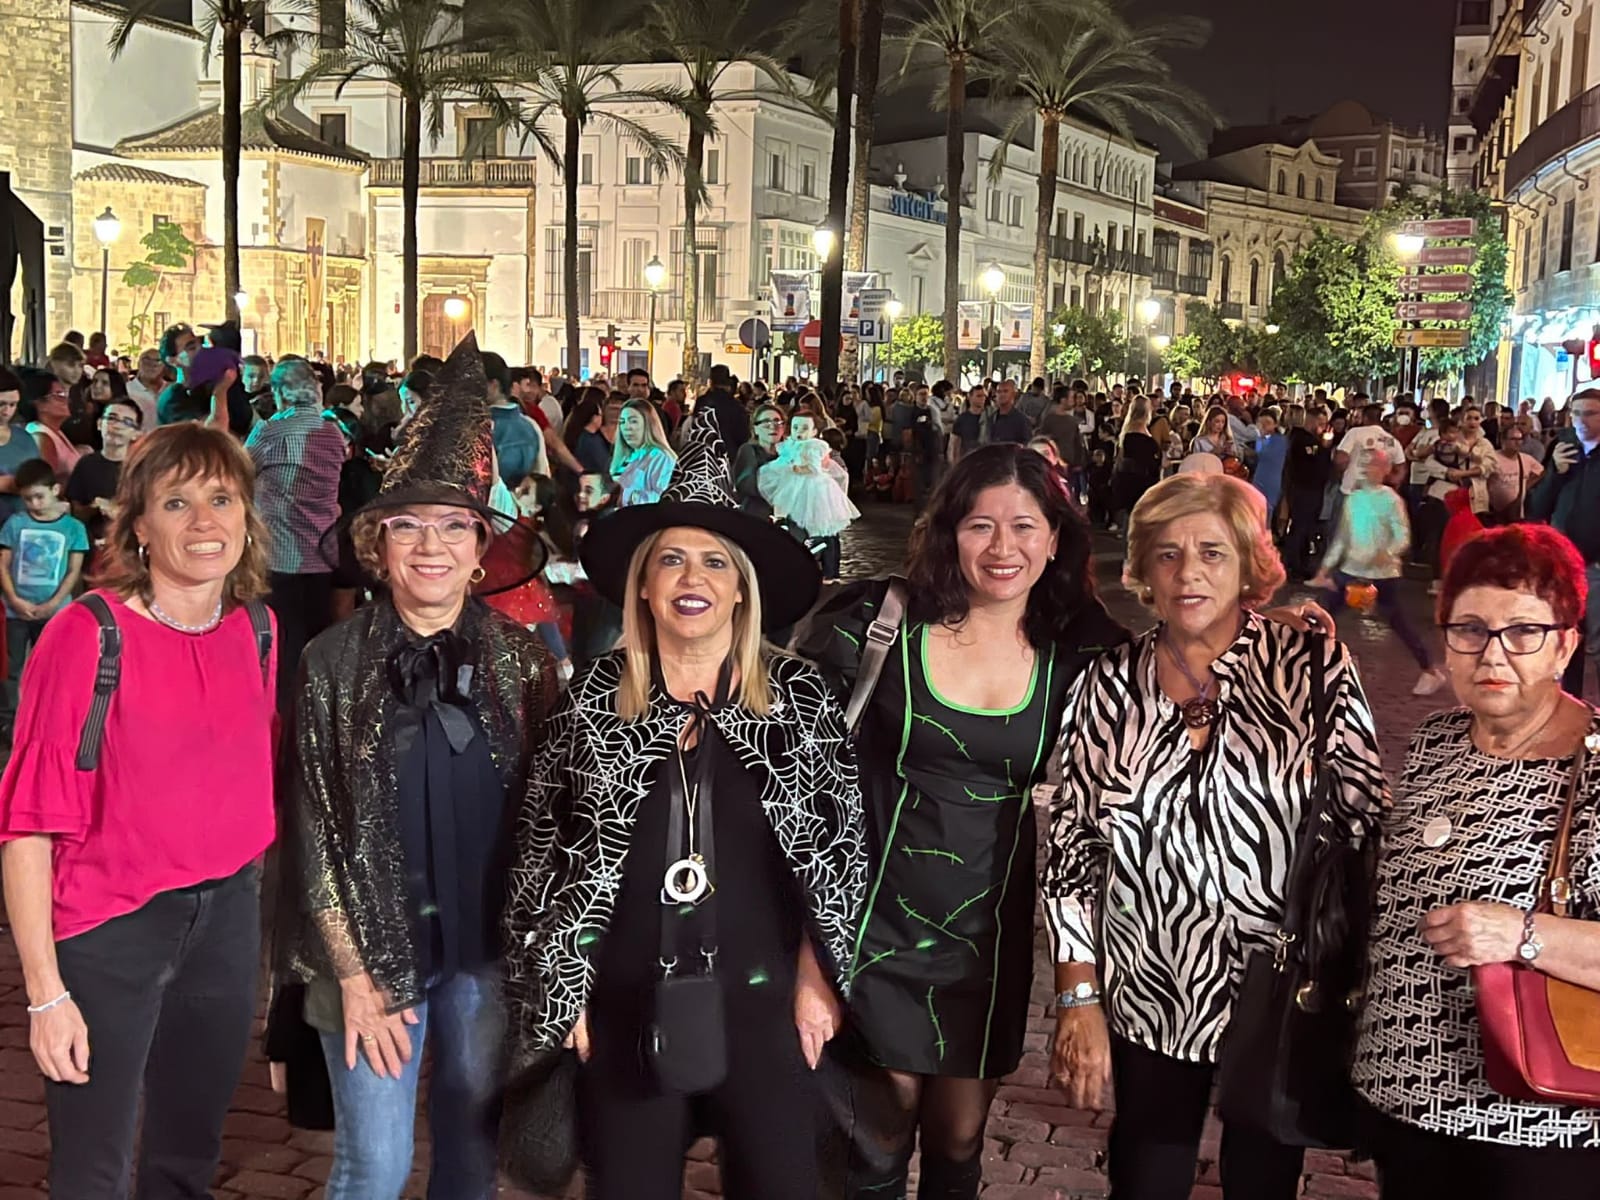 Espectacular y masivo ambiente en el centro. La comitiva municipal en la fiesta de Halloween en Jerez, presidida por la alcaldesa Mamen Sánchez, este 31 de octubre.